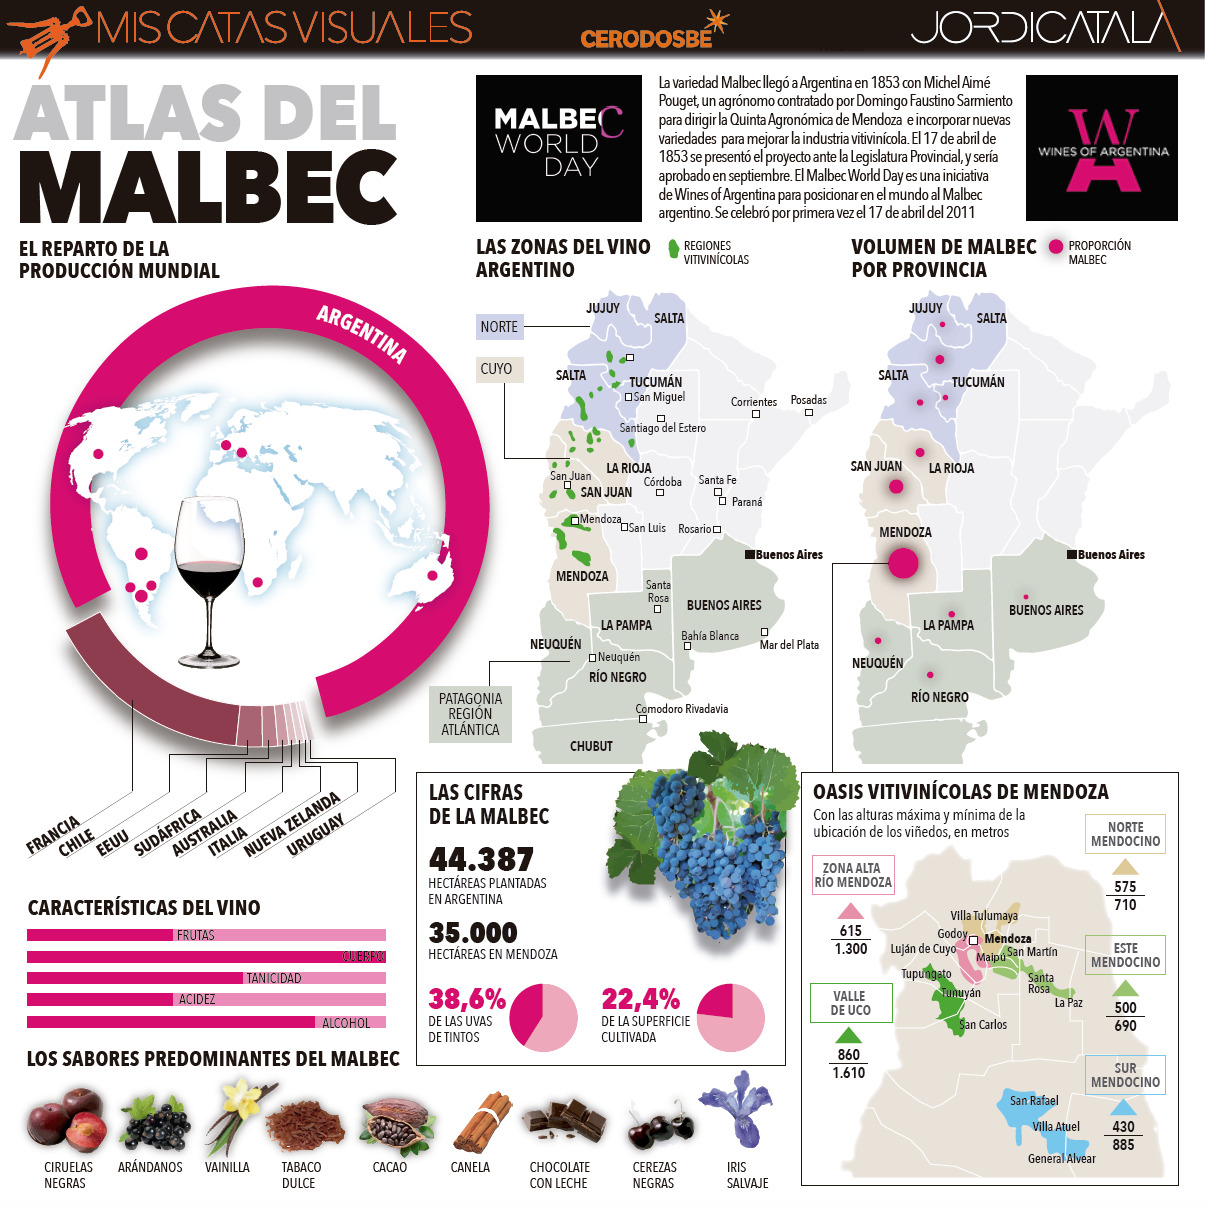 Atlas del Malbec. InfografiÌa Jordi Catala